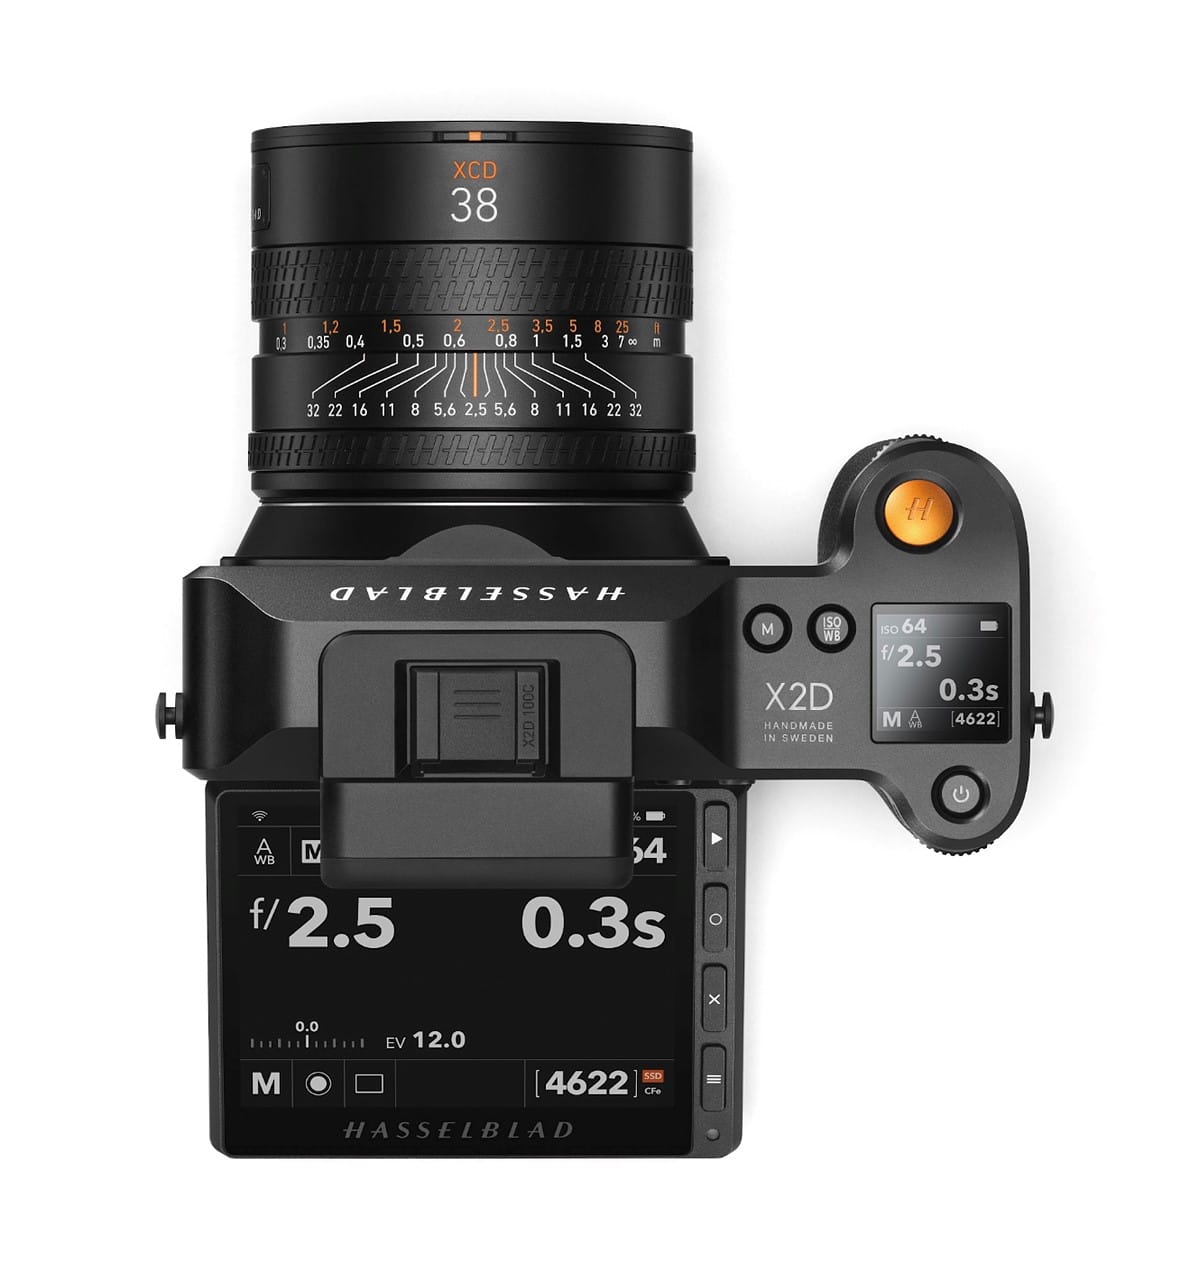 Máy ảnh Hasselblad X2D 100C ra mắt với cảm biến 100MP và hệ thống chống rung IBIS 5 trục bên trong